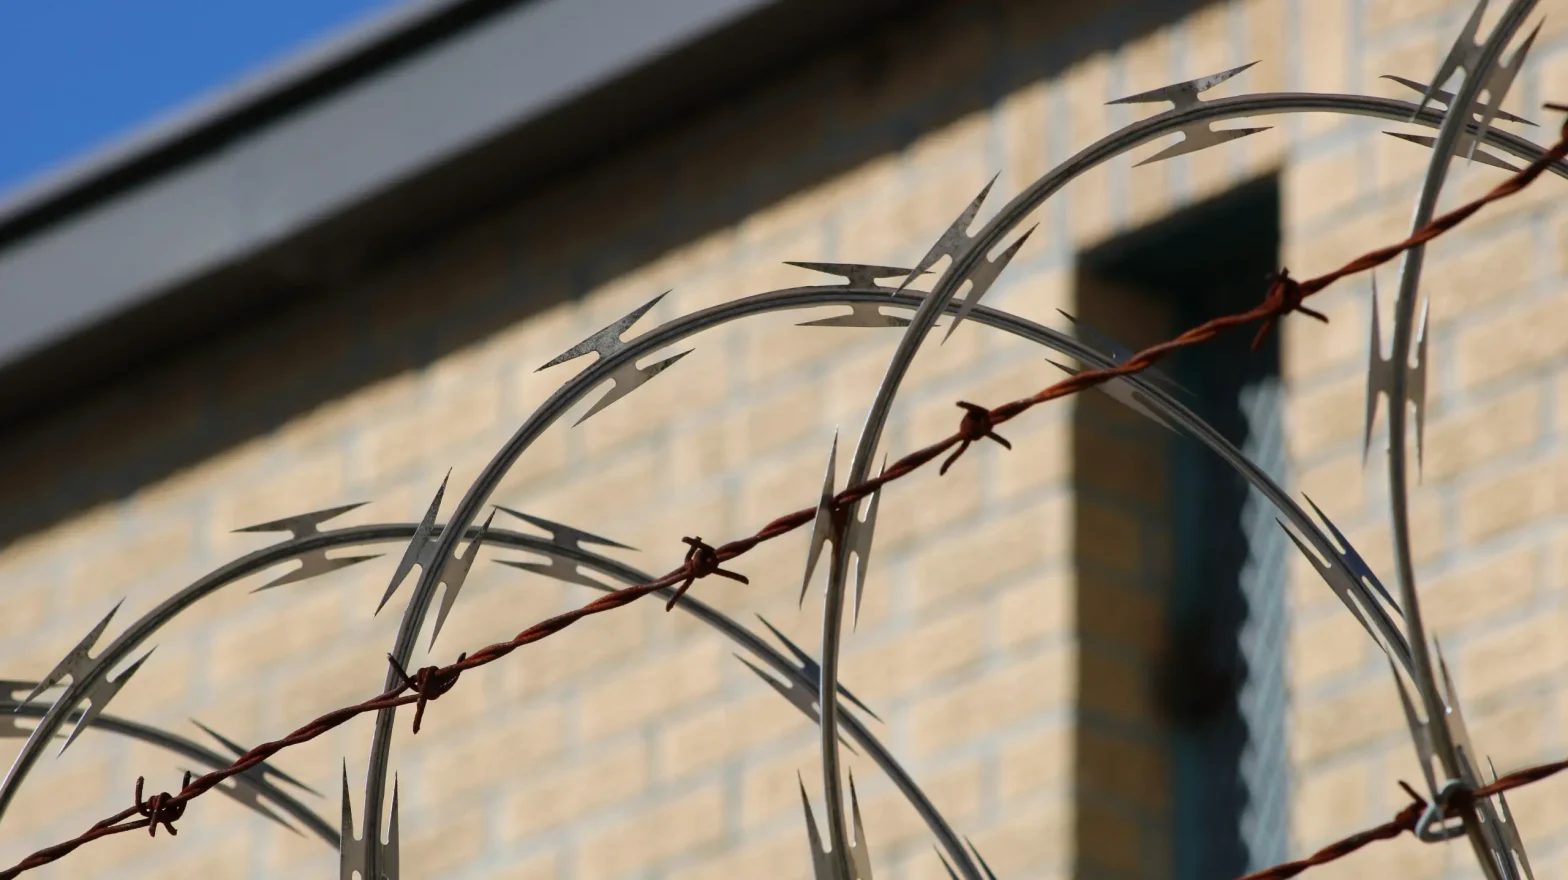 Wires around a prison building. Lane Garrison